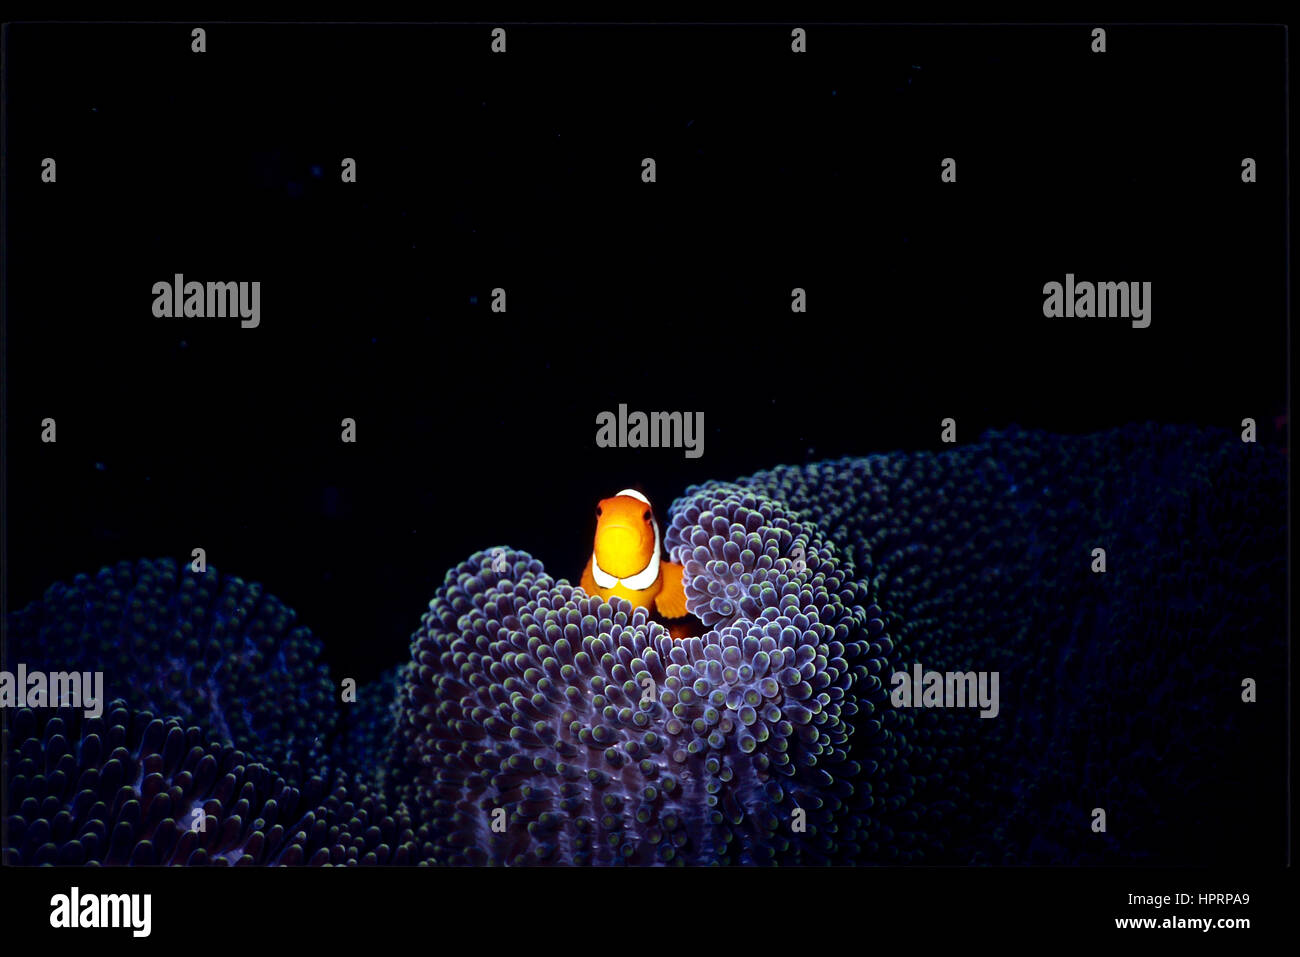 Un pesce pagliaccio (Amphiprione percula) che si apena dal rifugio del suo anemone tappeto ospite (Stichodactyla haddoni). Relazione simbiotica. Bali, Indonesia. Foto Stock